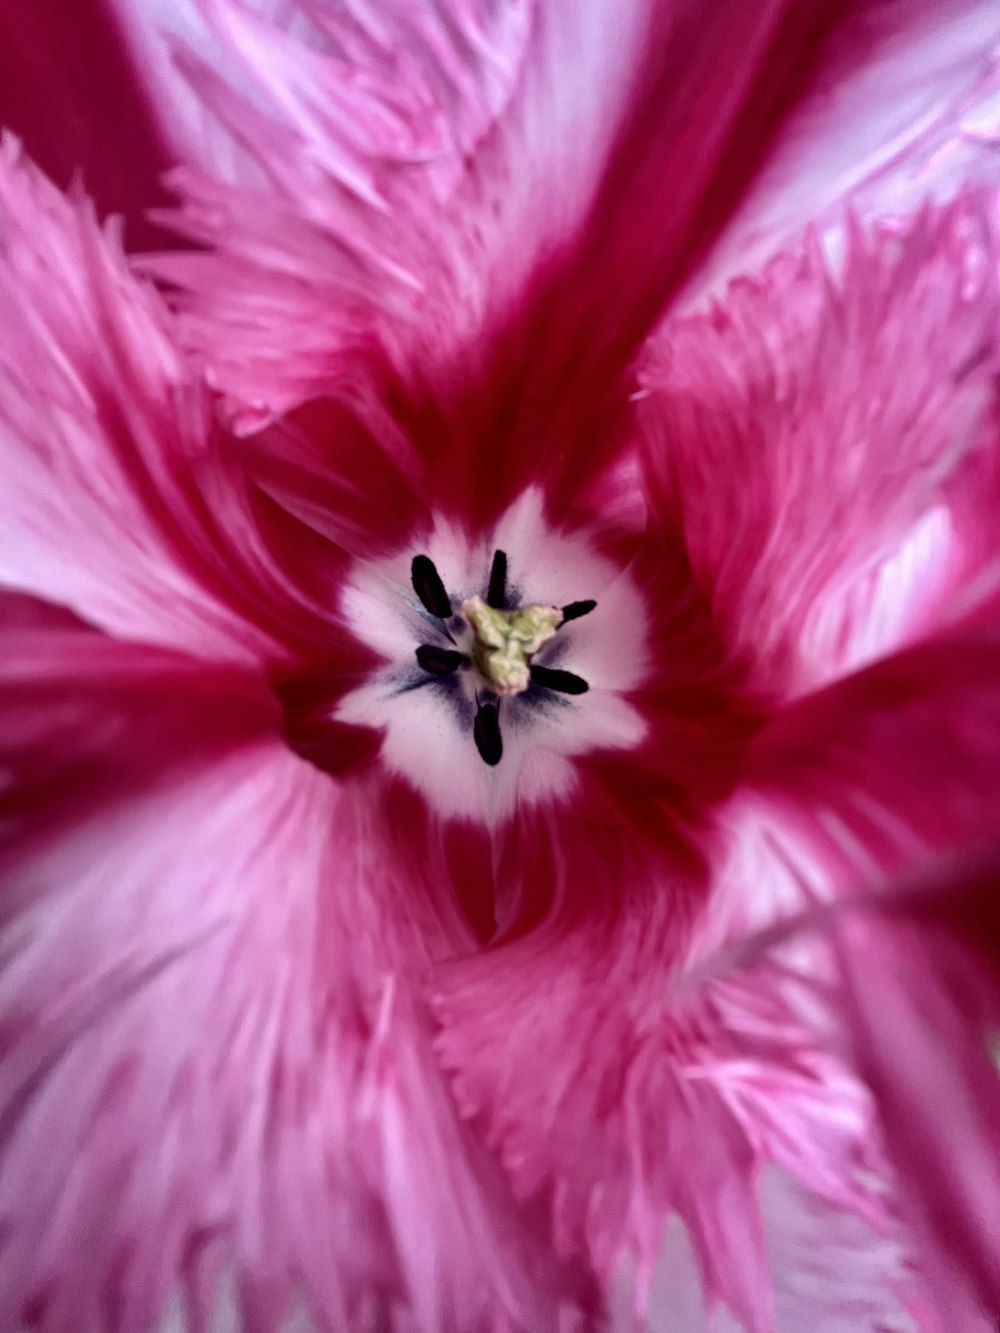 중앙에 흰색이 있는 분홍색 꽃의 클로즈업